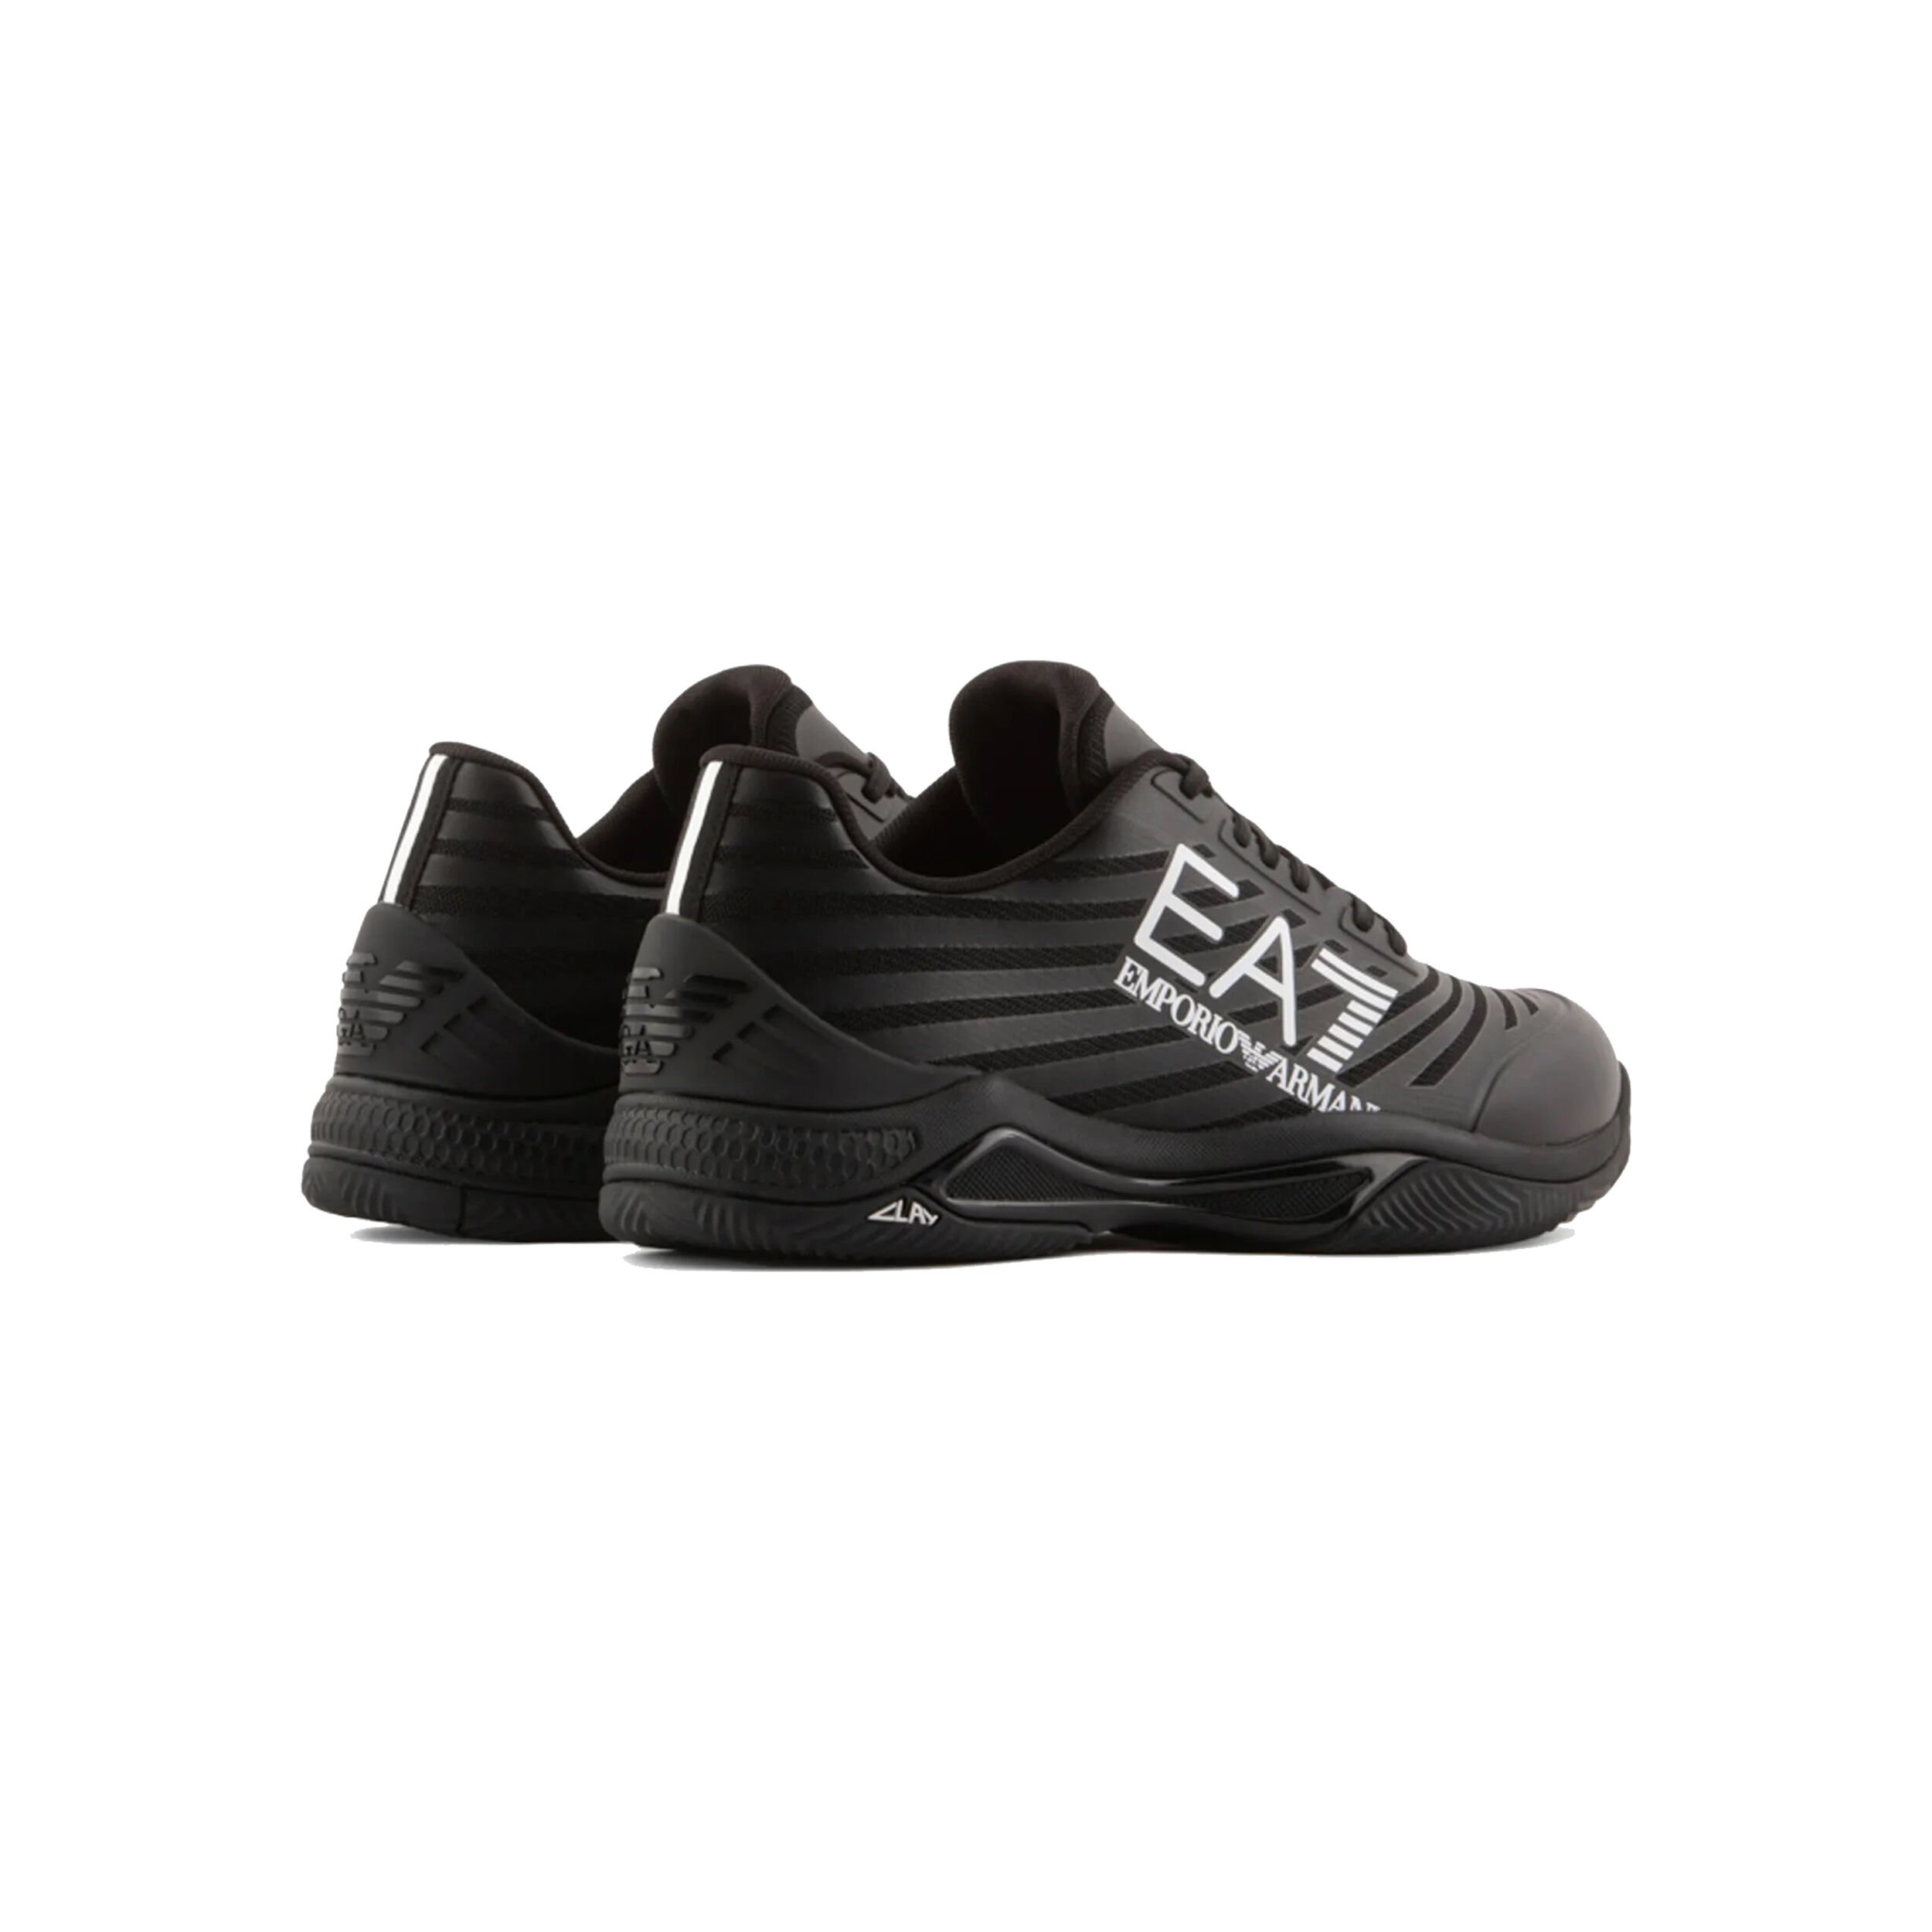 EMPORIO ARMANI Classic Sneakers - EA7 - Citysport